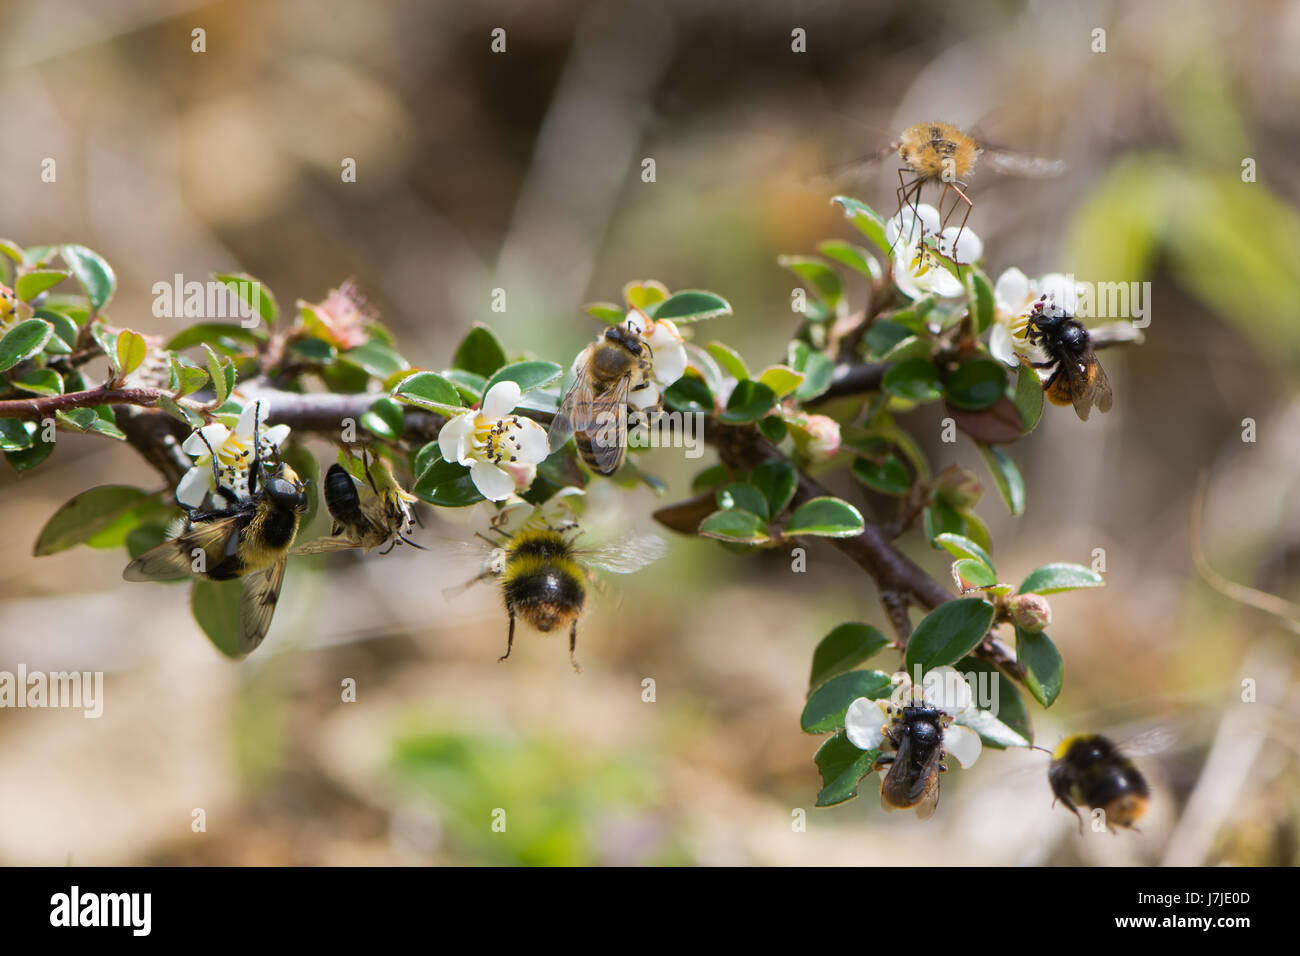 Les abeilles de la composite et imite. Hoverfly (Volucella bombylans), l'abeille (Apis melifera), début de bourdon (Bombus pratorum), bee fly Banque D'Images